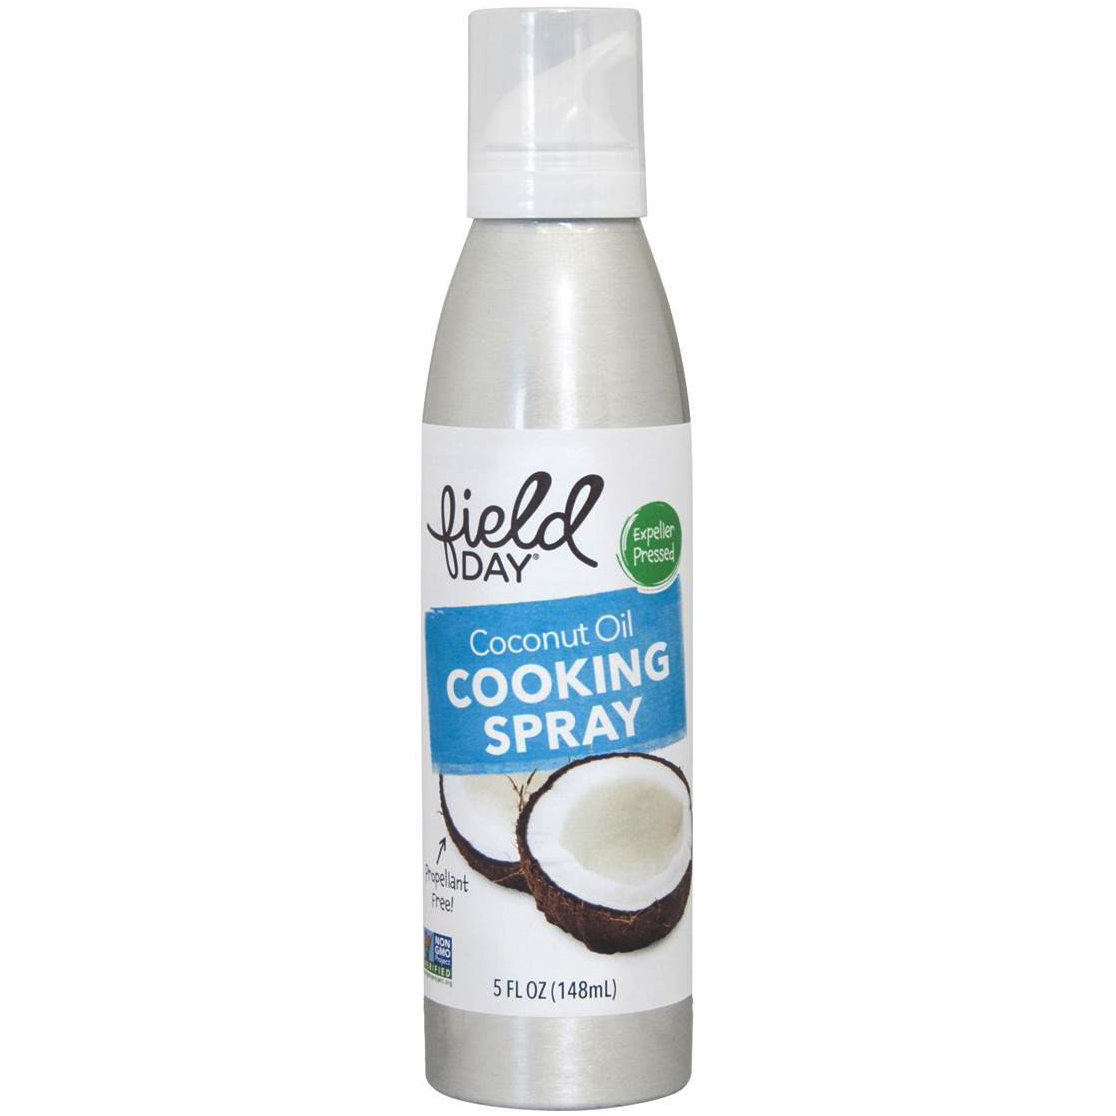 FIELD DAY - ORGANIC COOKING SPRAY - NON GMO - VEGAN - (Coconut Oil) - 5oz